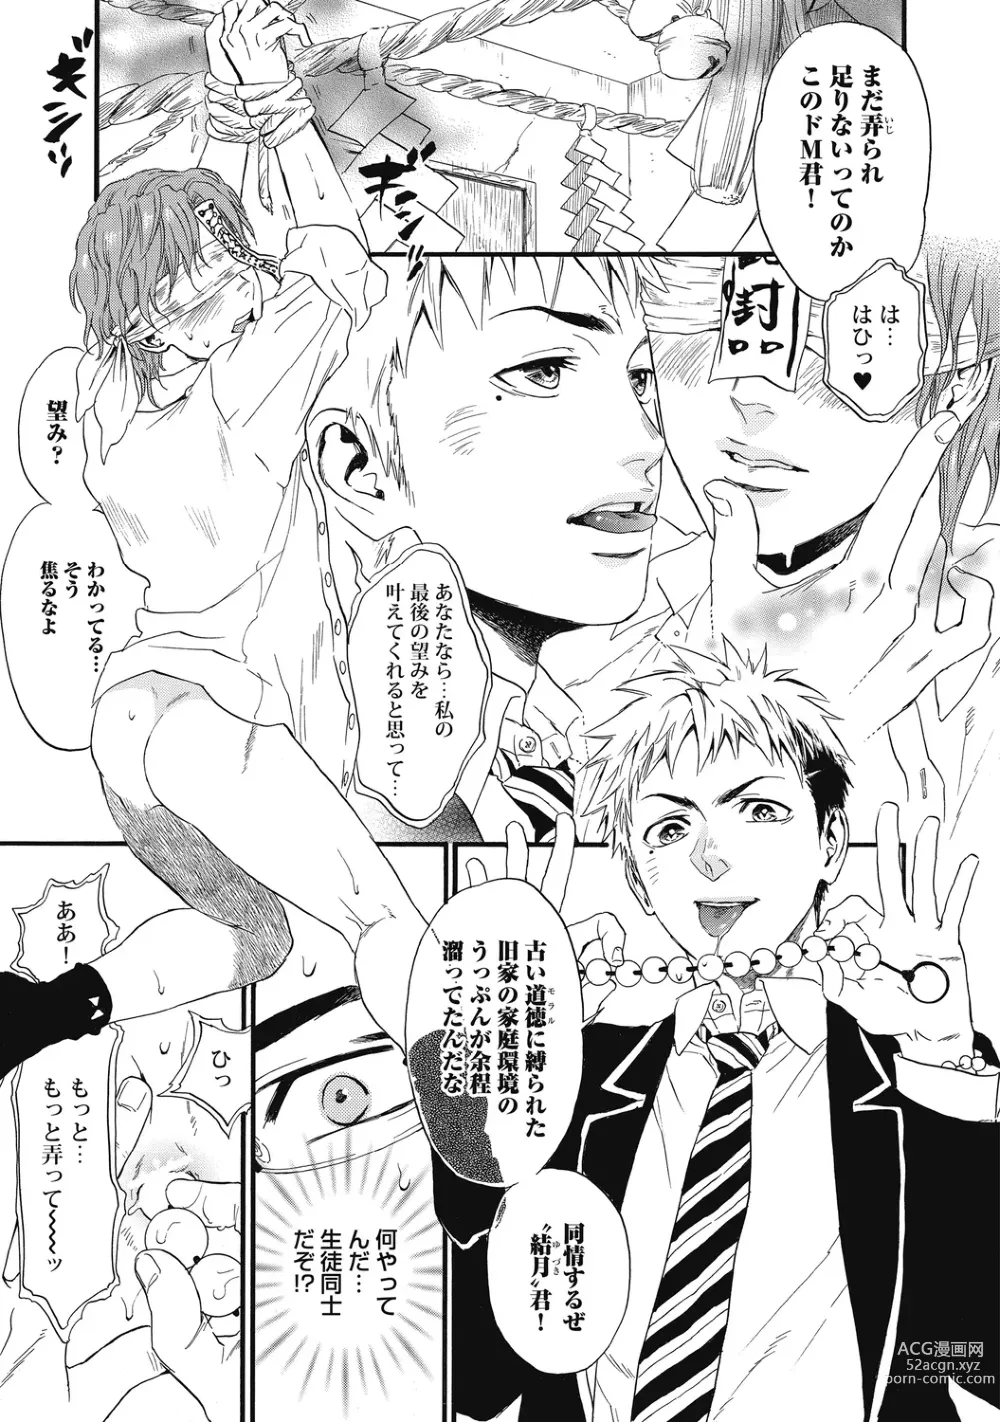 Page 9 of manga Mashounen